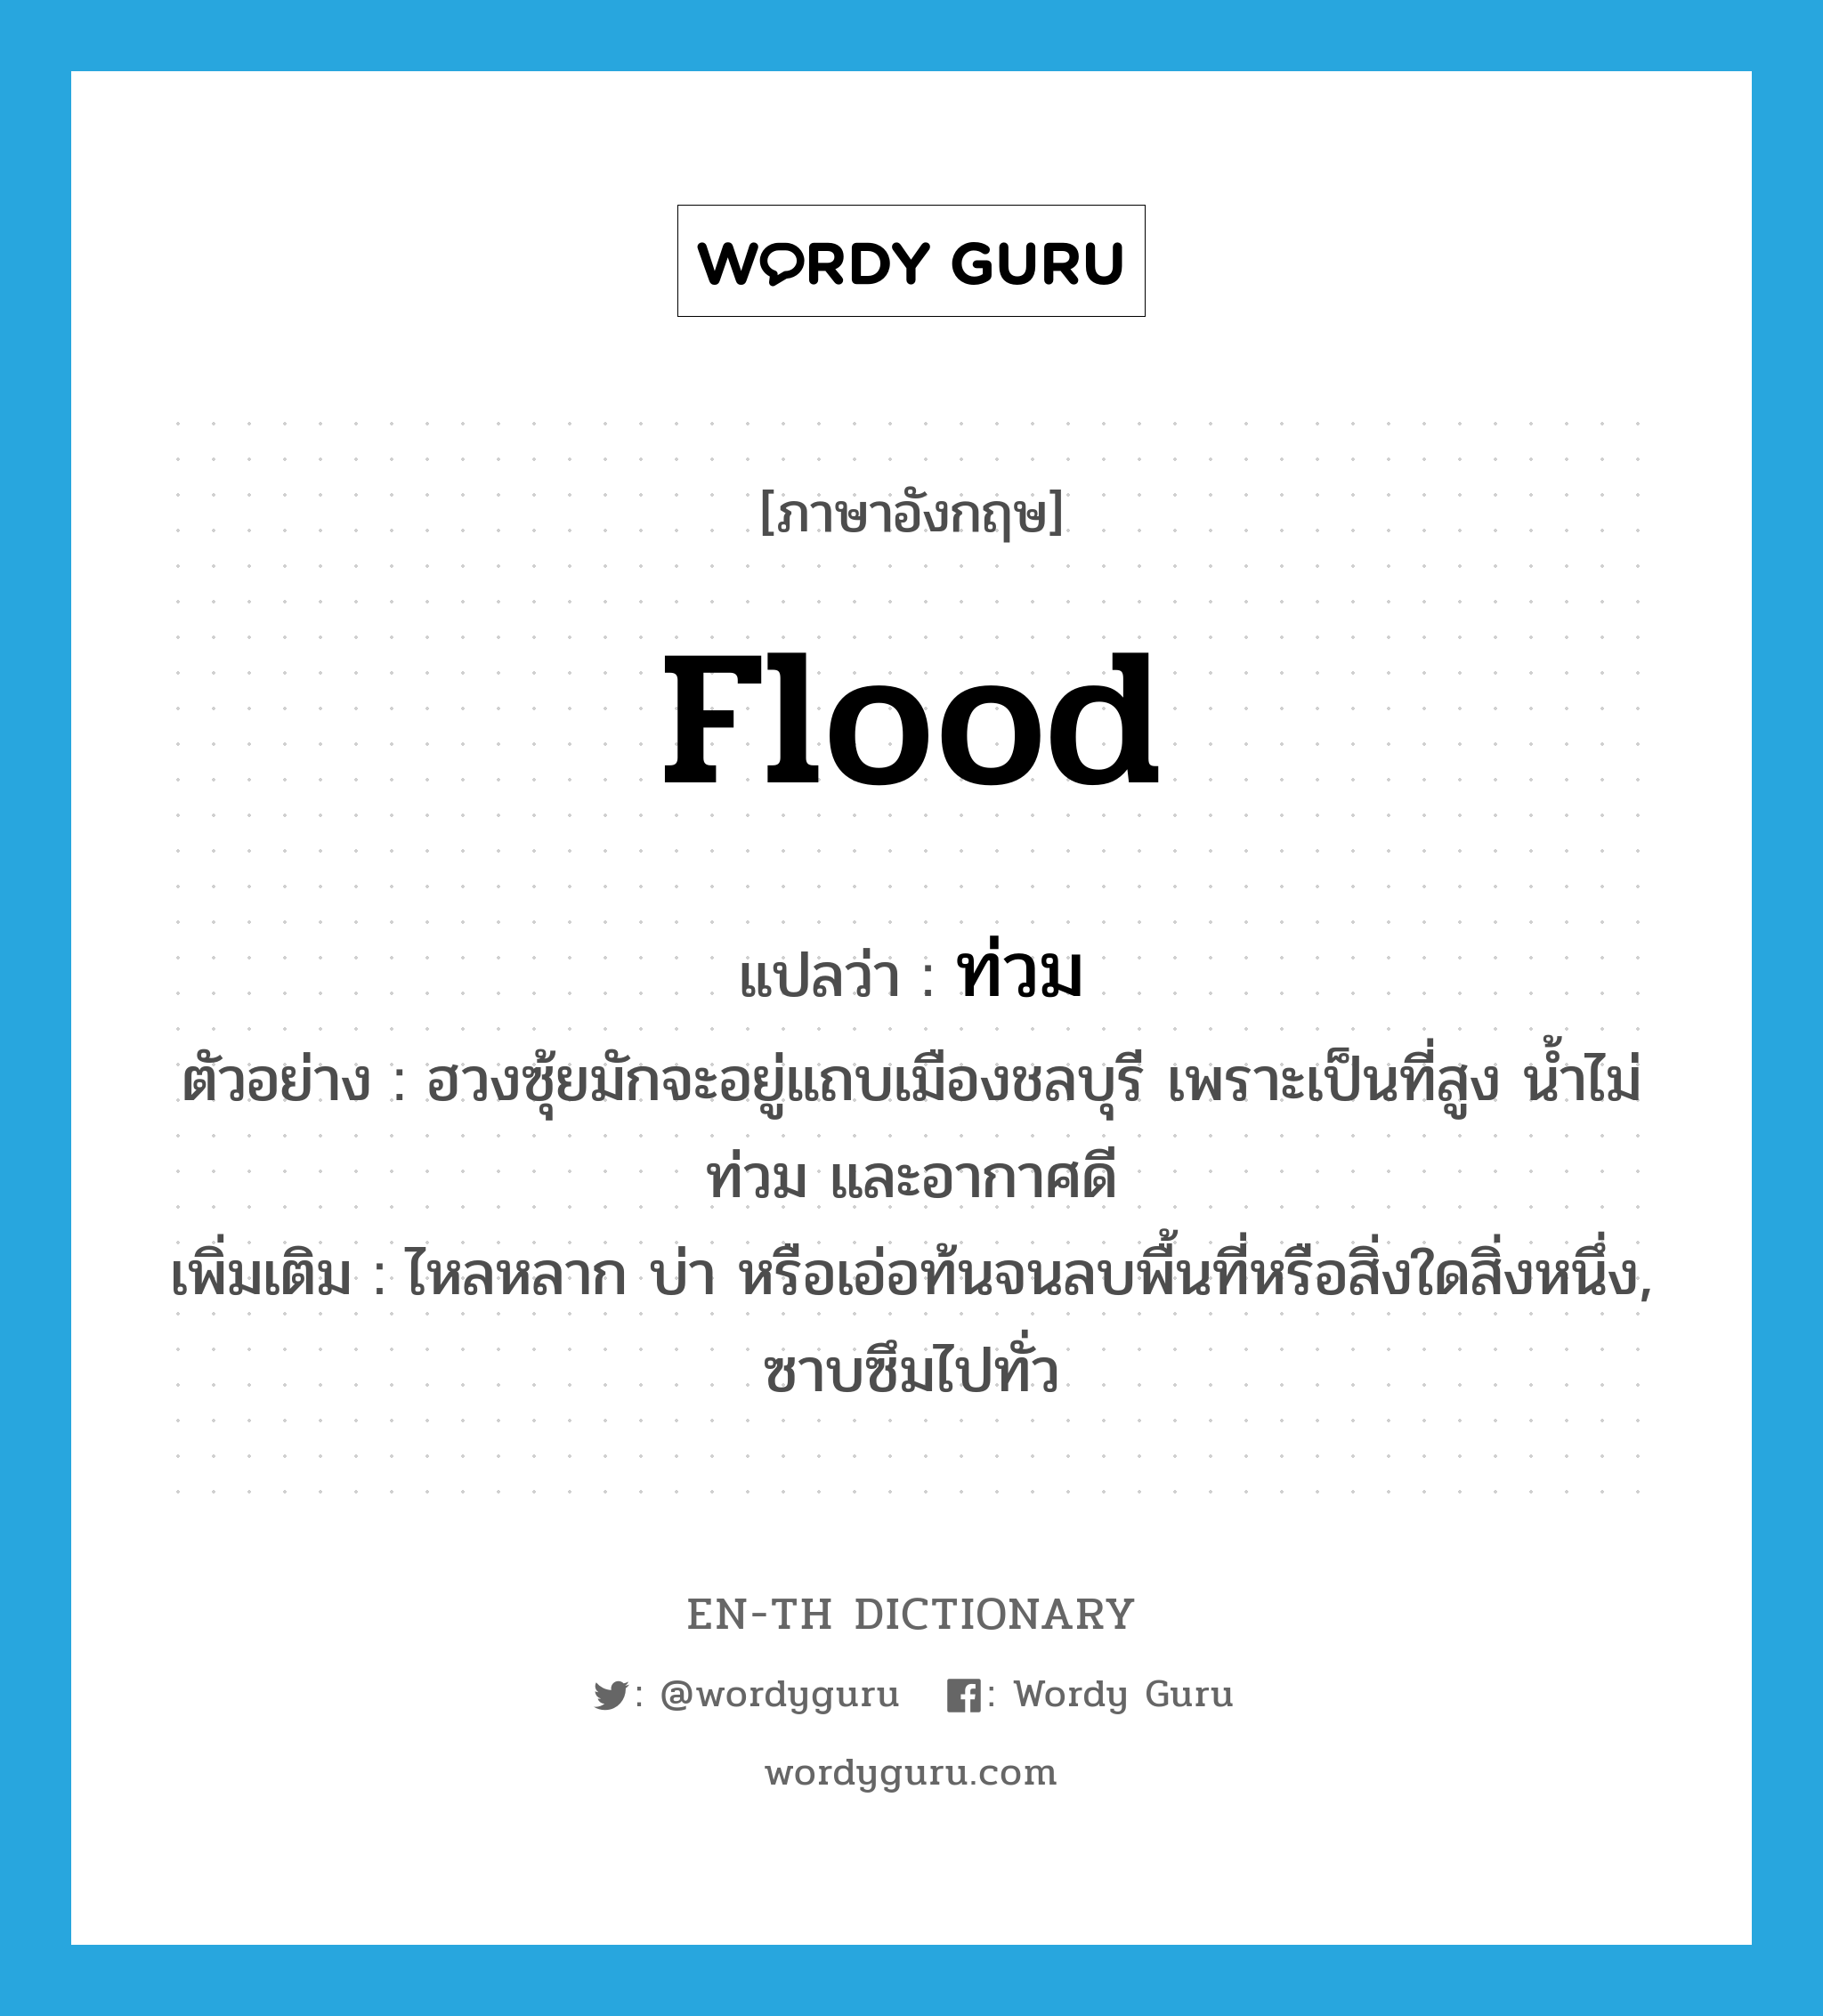 flood แปลว่า?, คำศัพท์ภาษาอังกฤษ flood แปลว่า ท่วม ประเภท V ตัวอย่าง ฮวงซุ้ยมักจะอยู่แถบเมืองชลบุรี เพราะเป็นที่สูง น้ำไม่ท่วม และอากาศดี เพิ่มเติม ไหลหลาก บ่า หรือเอ่อท้นจนลบพื้นที่หรือสิ่งใดสิ่งหนึ่ง, ซาบซึมไปทั่ว หมวด V